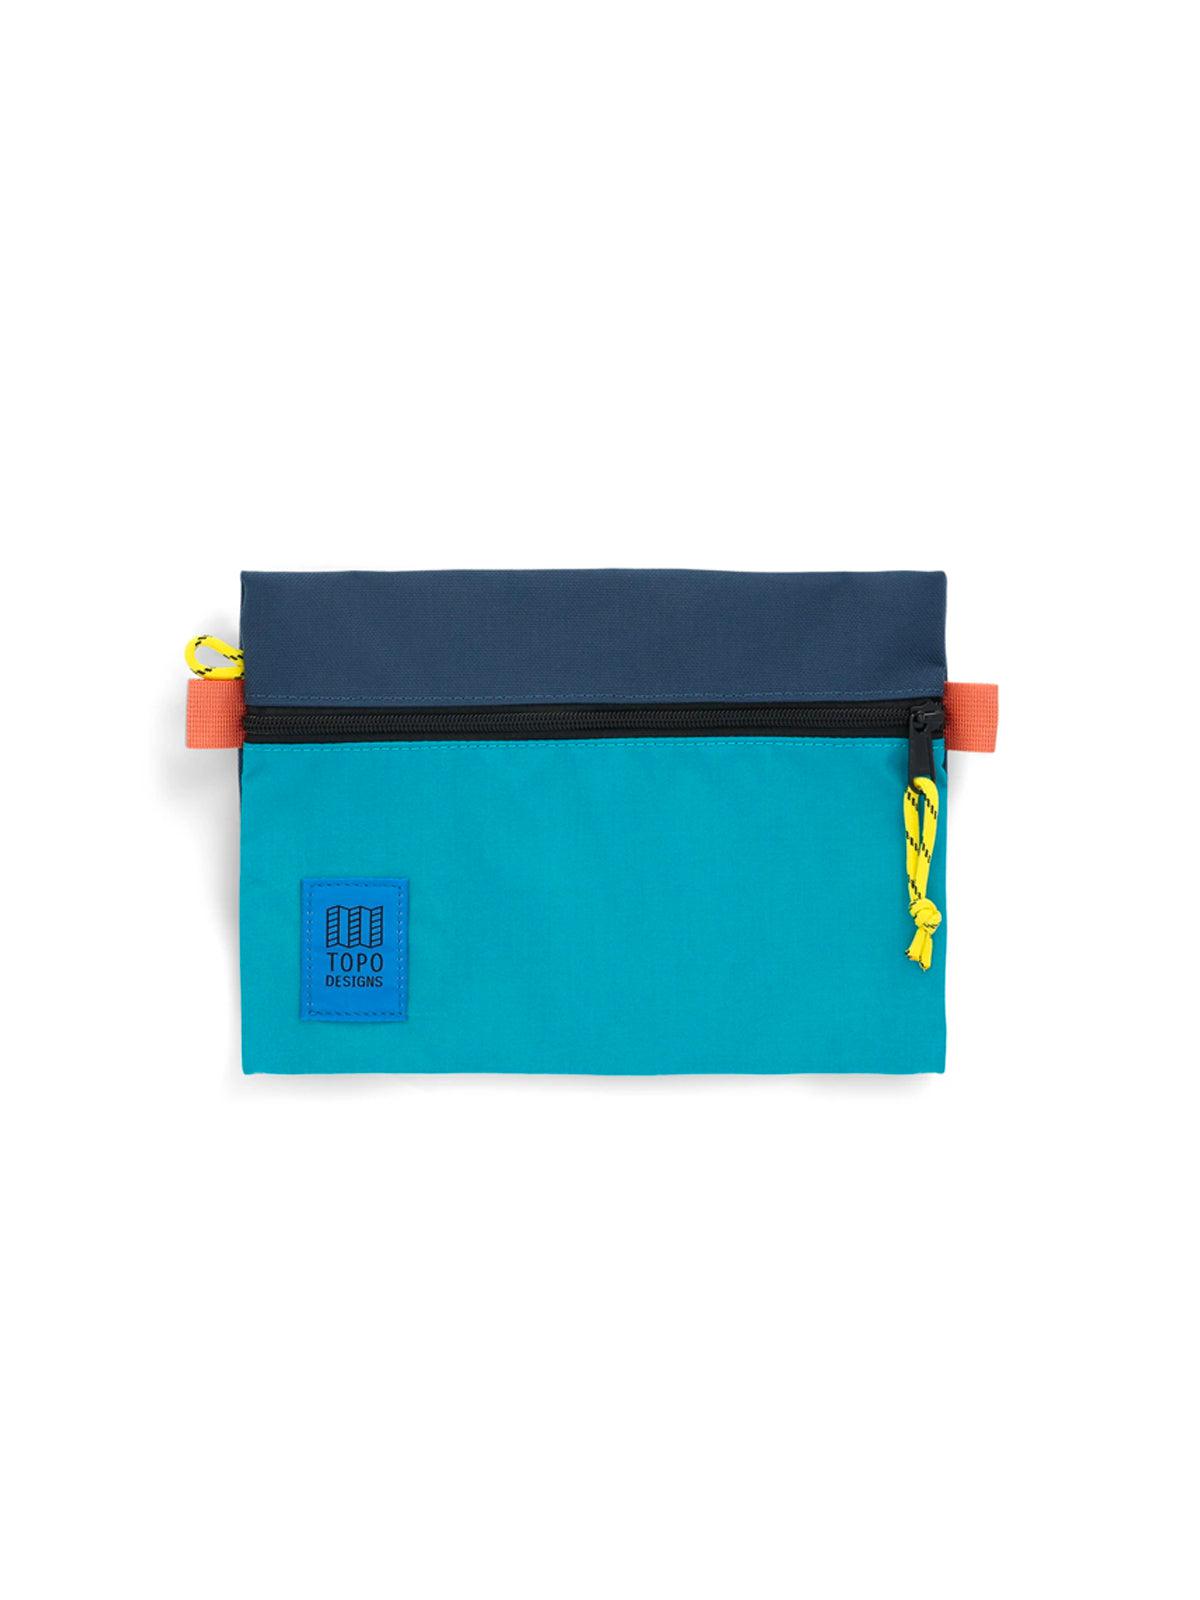 Topo Designs Accessory Bags Tile Blue Pond Blue